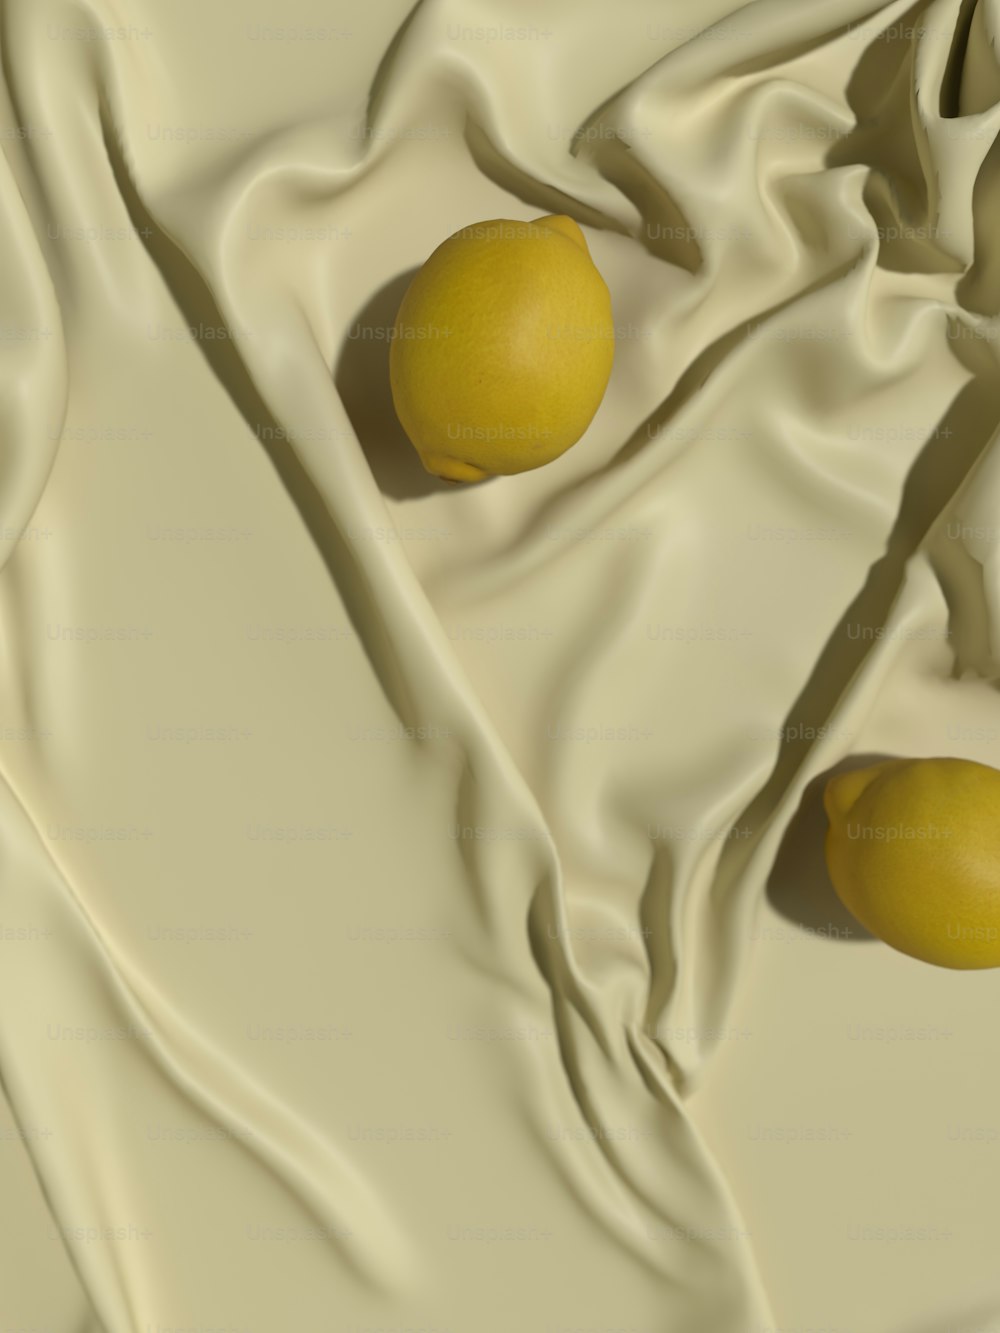 Zwei Zitronen sitzen auf einem weißen Tuch